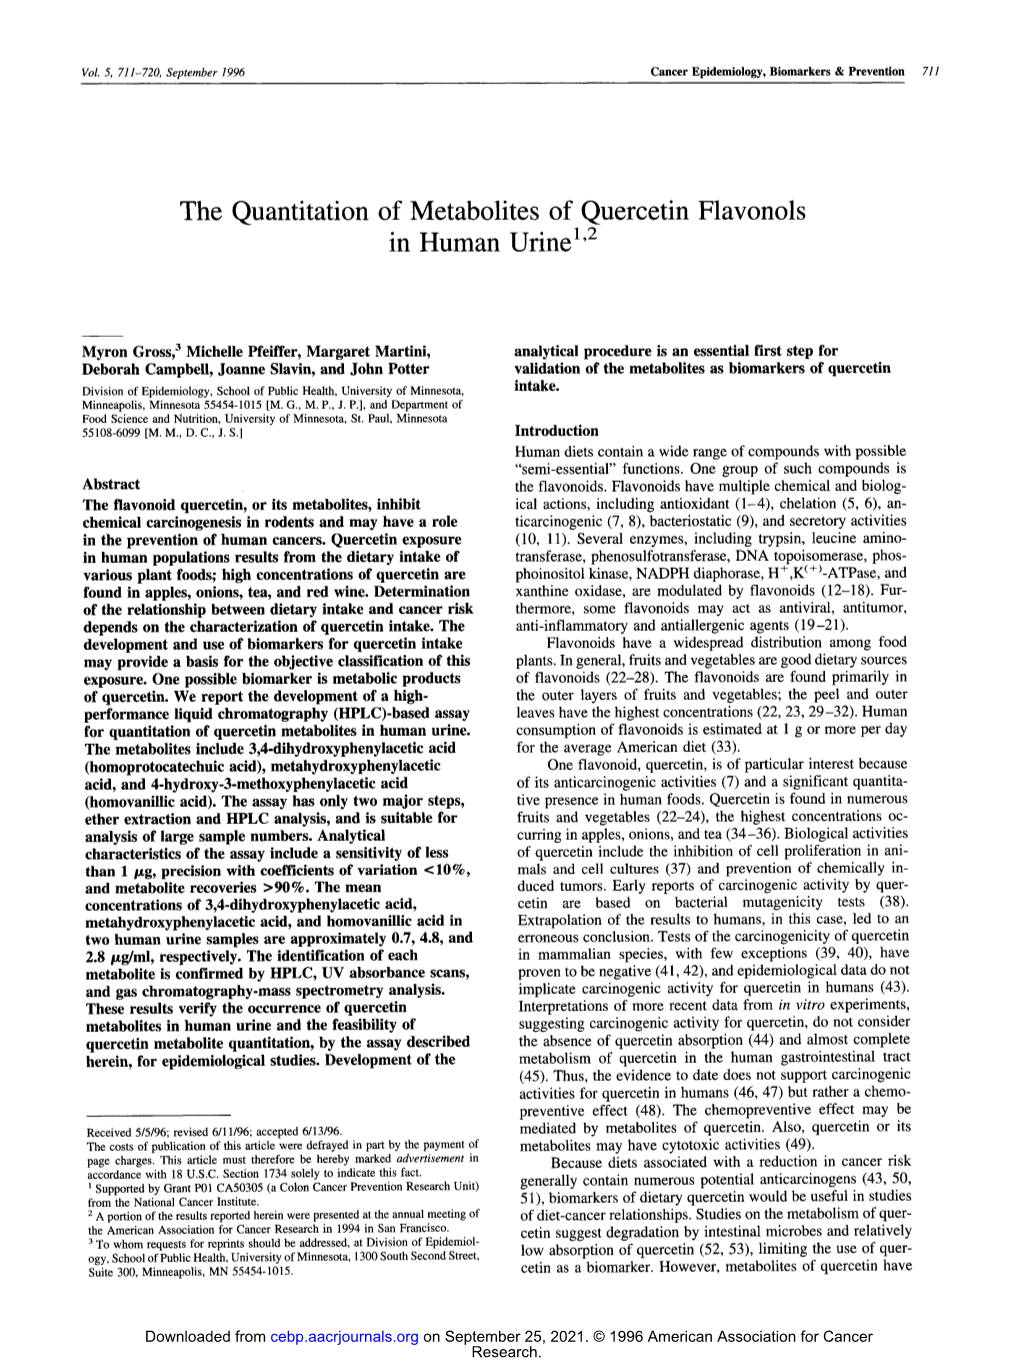 The Quantitation of Metabolites of Quercetin Flavonols in Human Urine"2